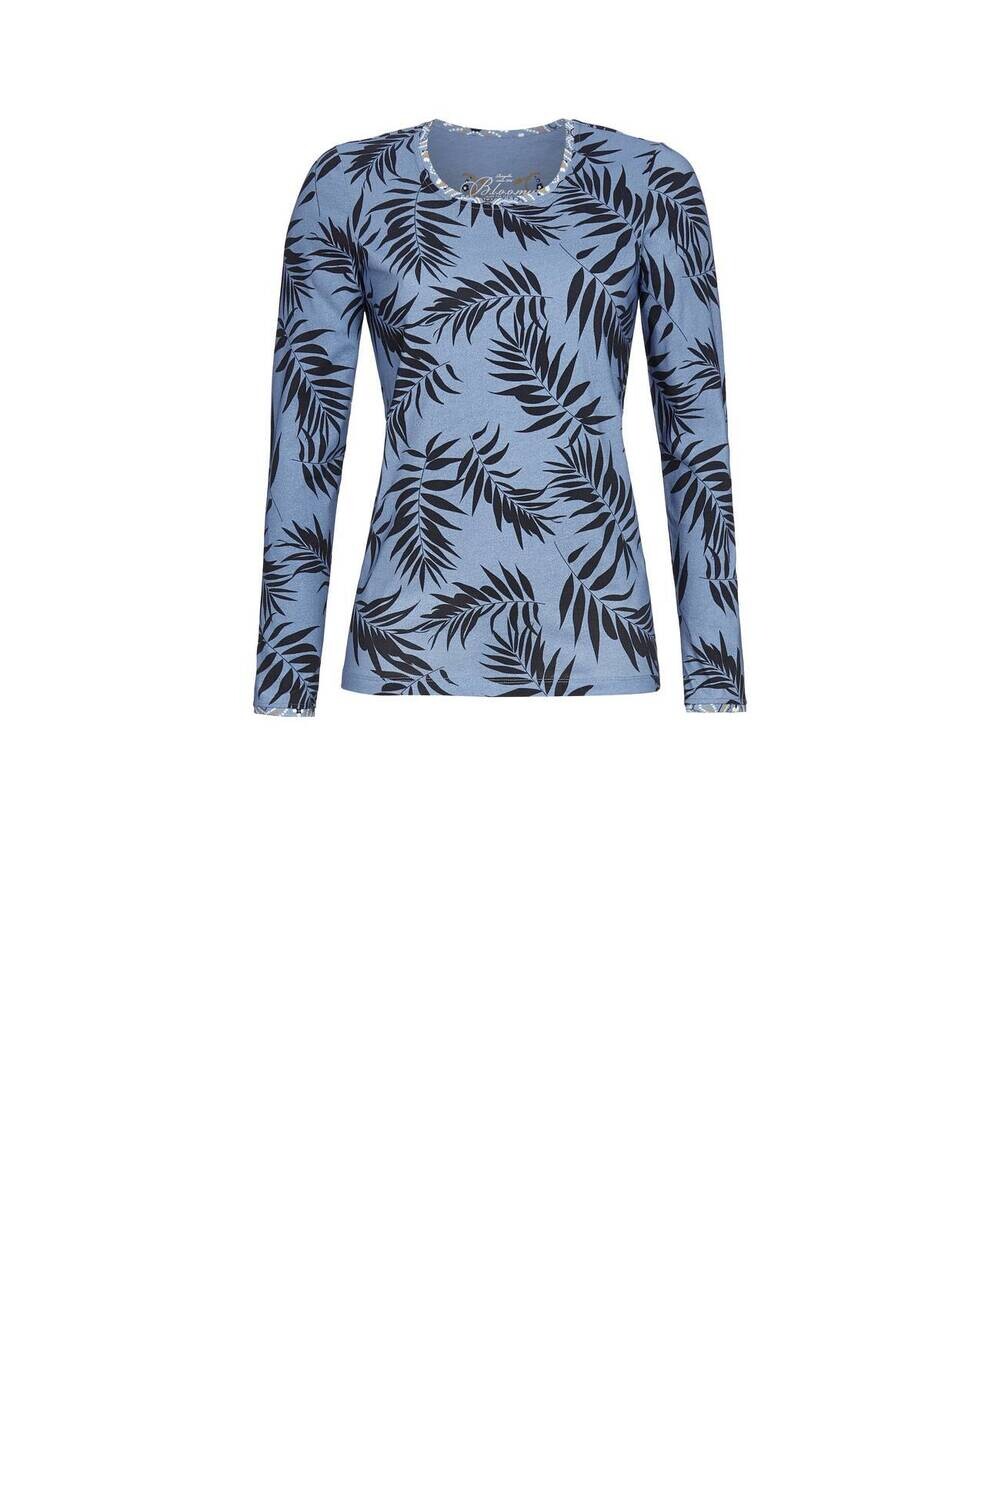 Bloomy bij Ringella shirt 3551407 Blauw combinatie